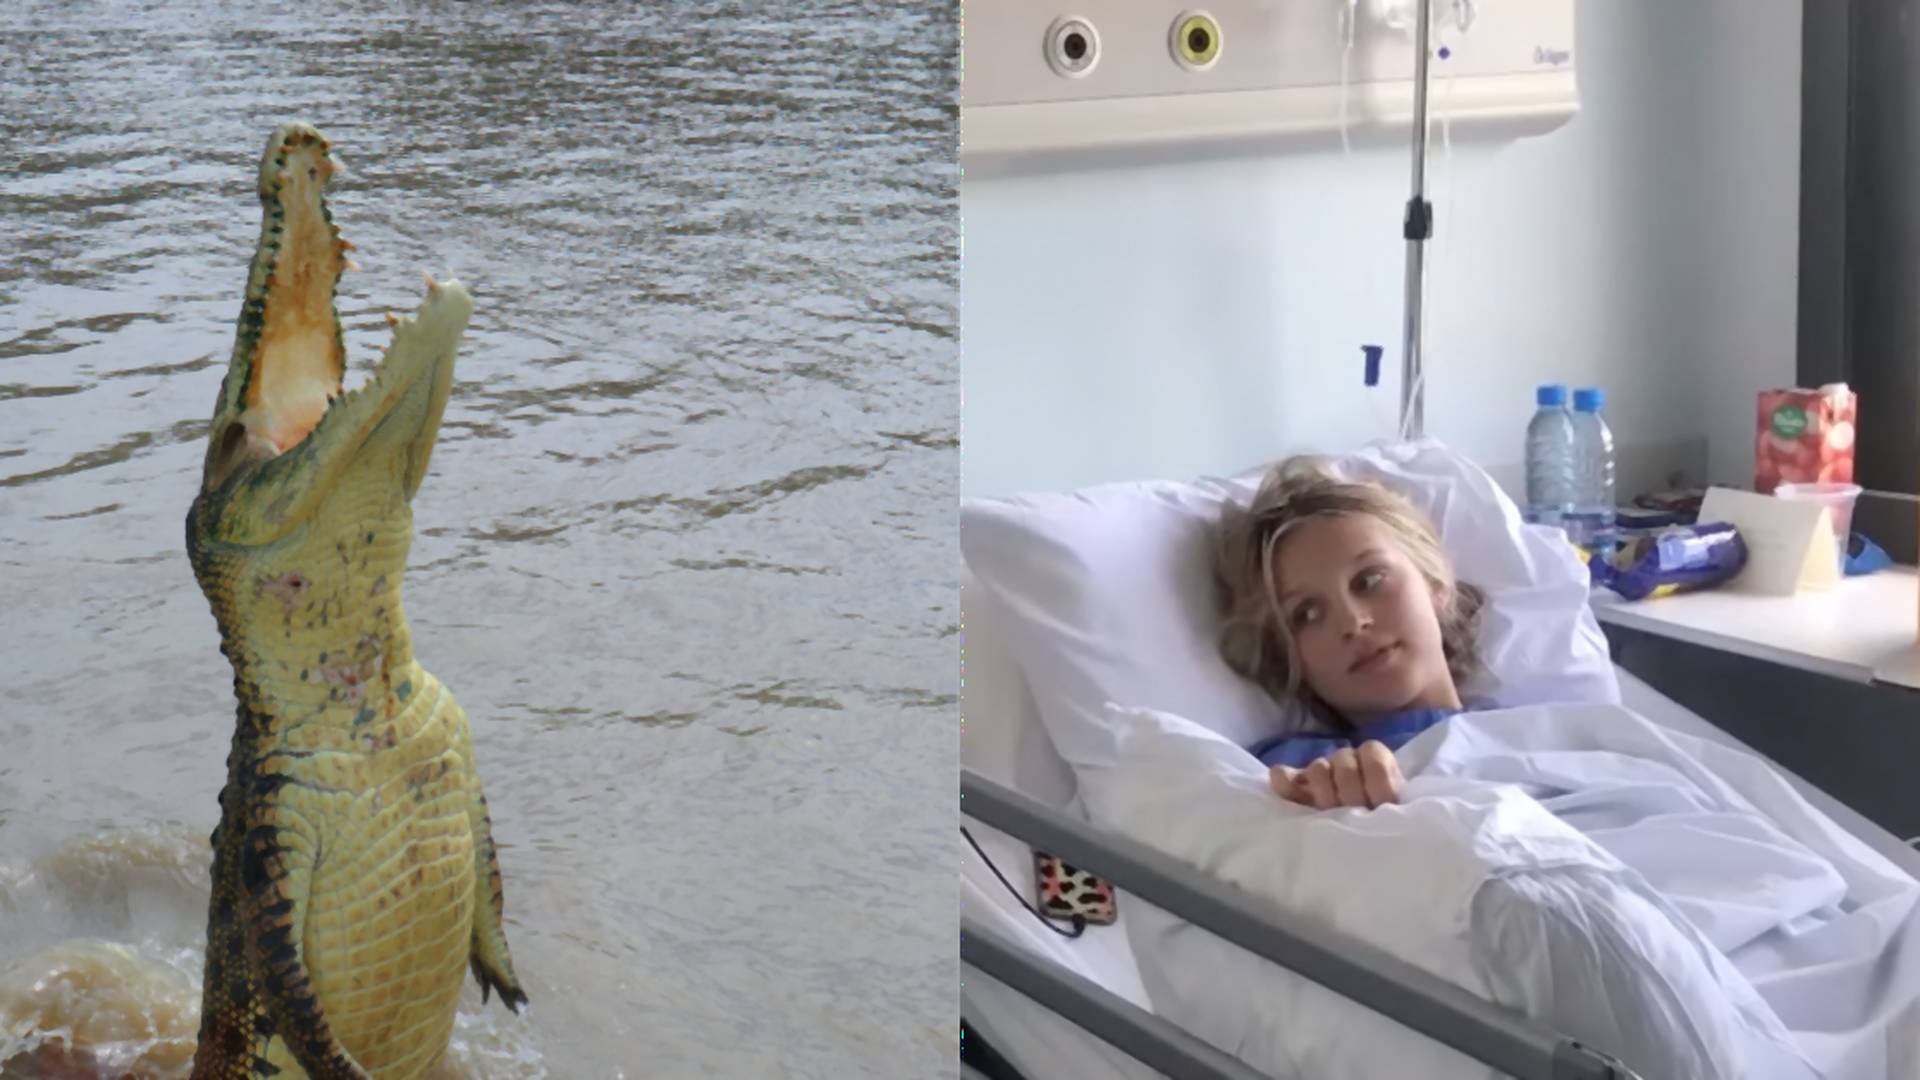 Tínedžerka zázrakom prežila útok krokodíla počas raftovania. Zachránili ju kamaráti, ktorí ho udierali do hlavy